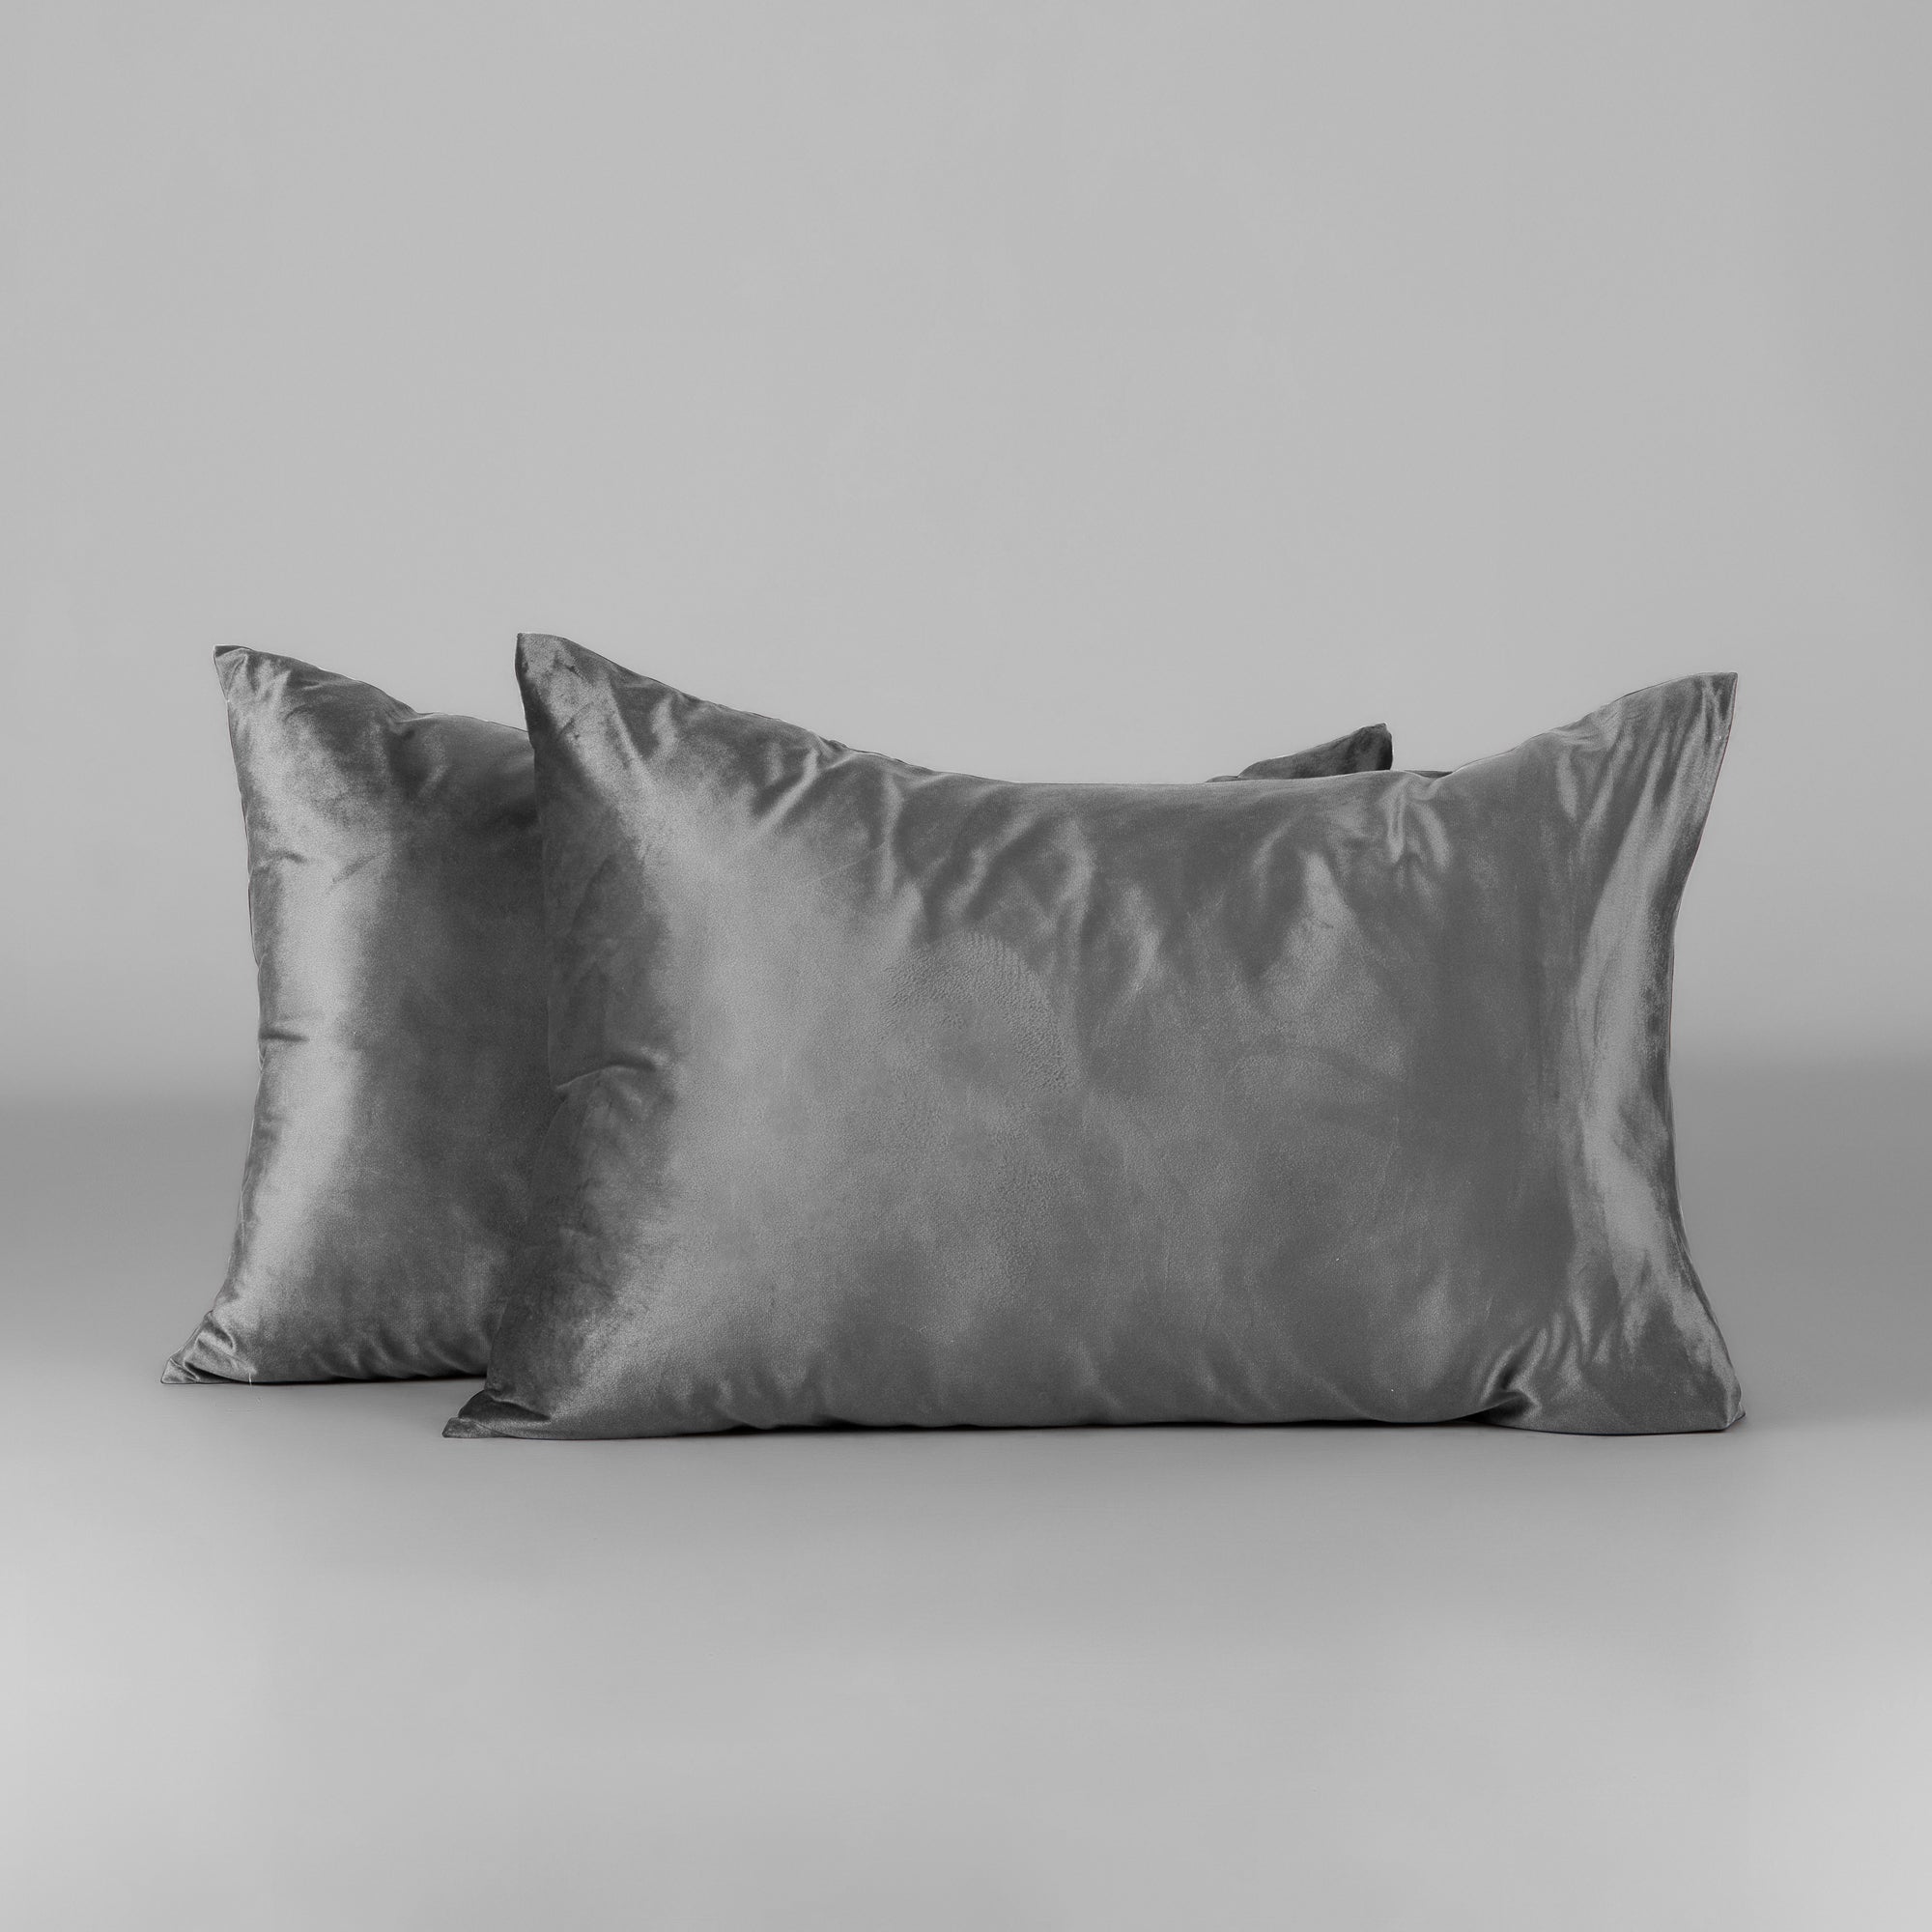 The Linen Company Bedding Mystic Grey Velvet Duvet Cover Set